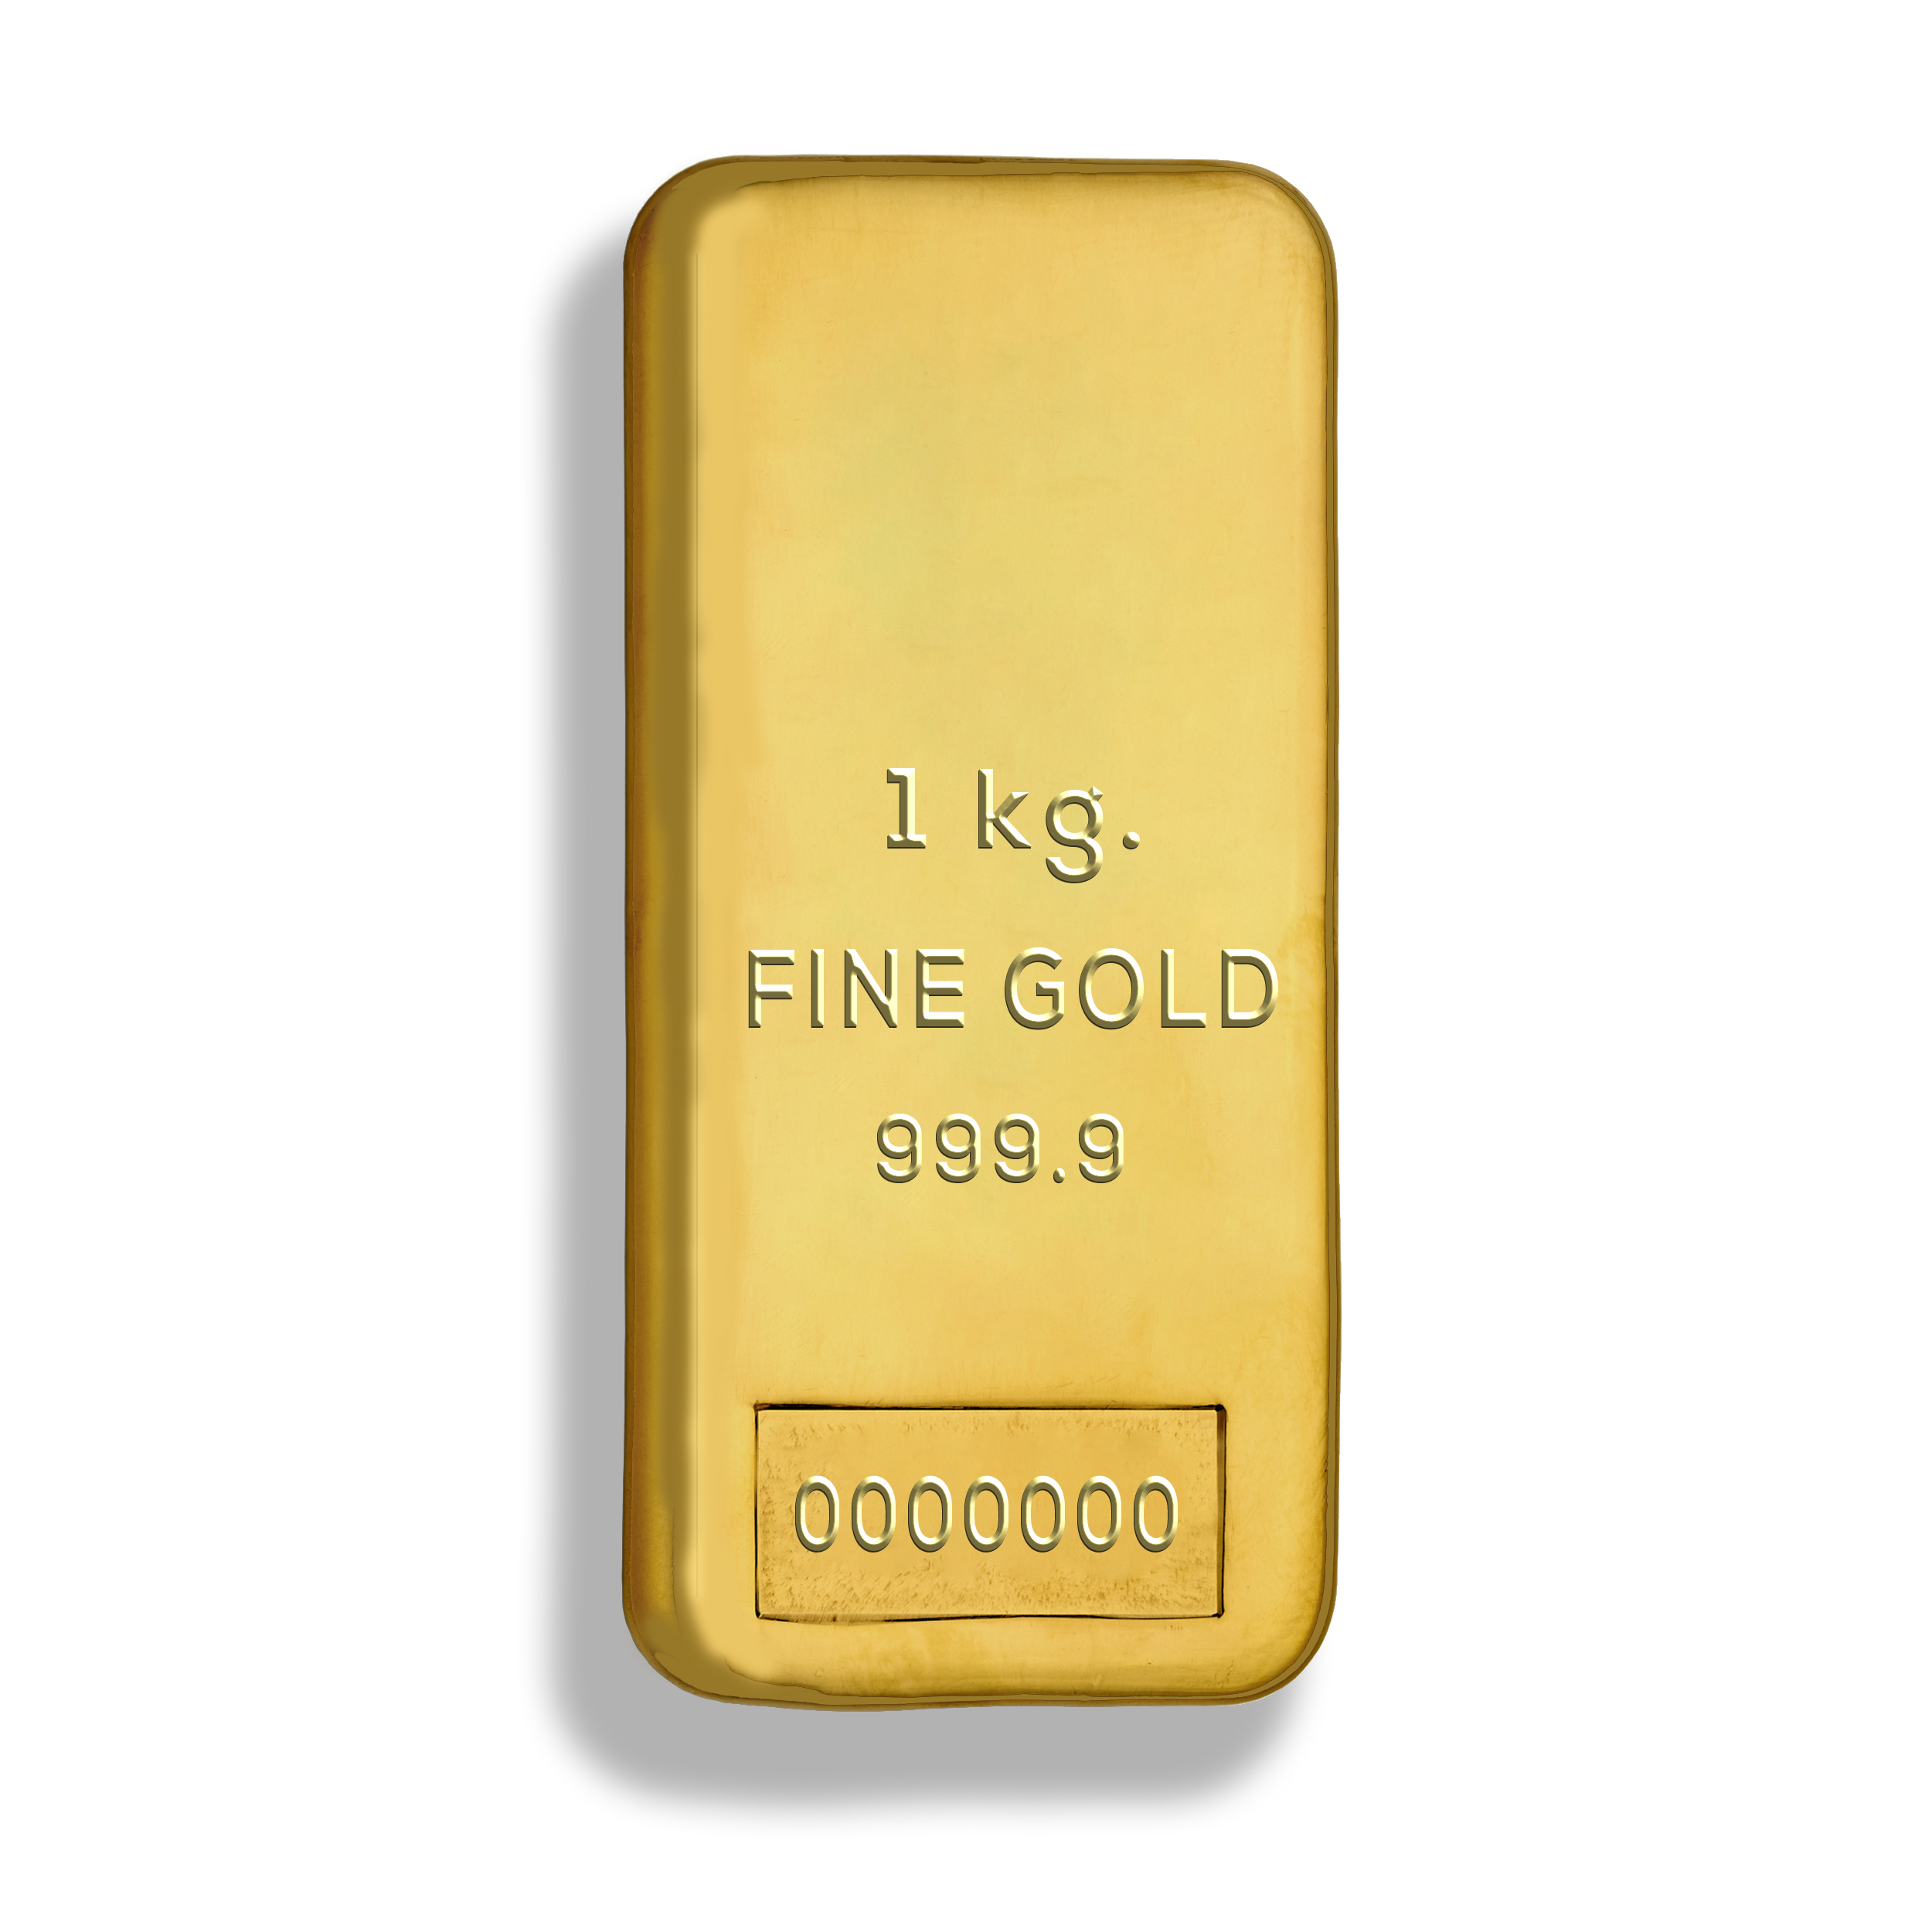 M1 gold. Слиток золота. 1kg Gold Price. Золото 999. Слиток золотой.